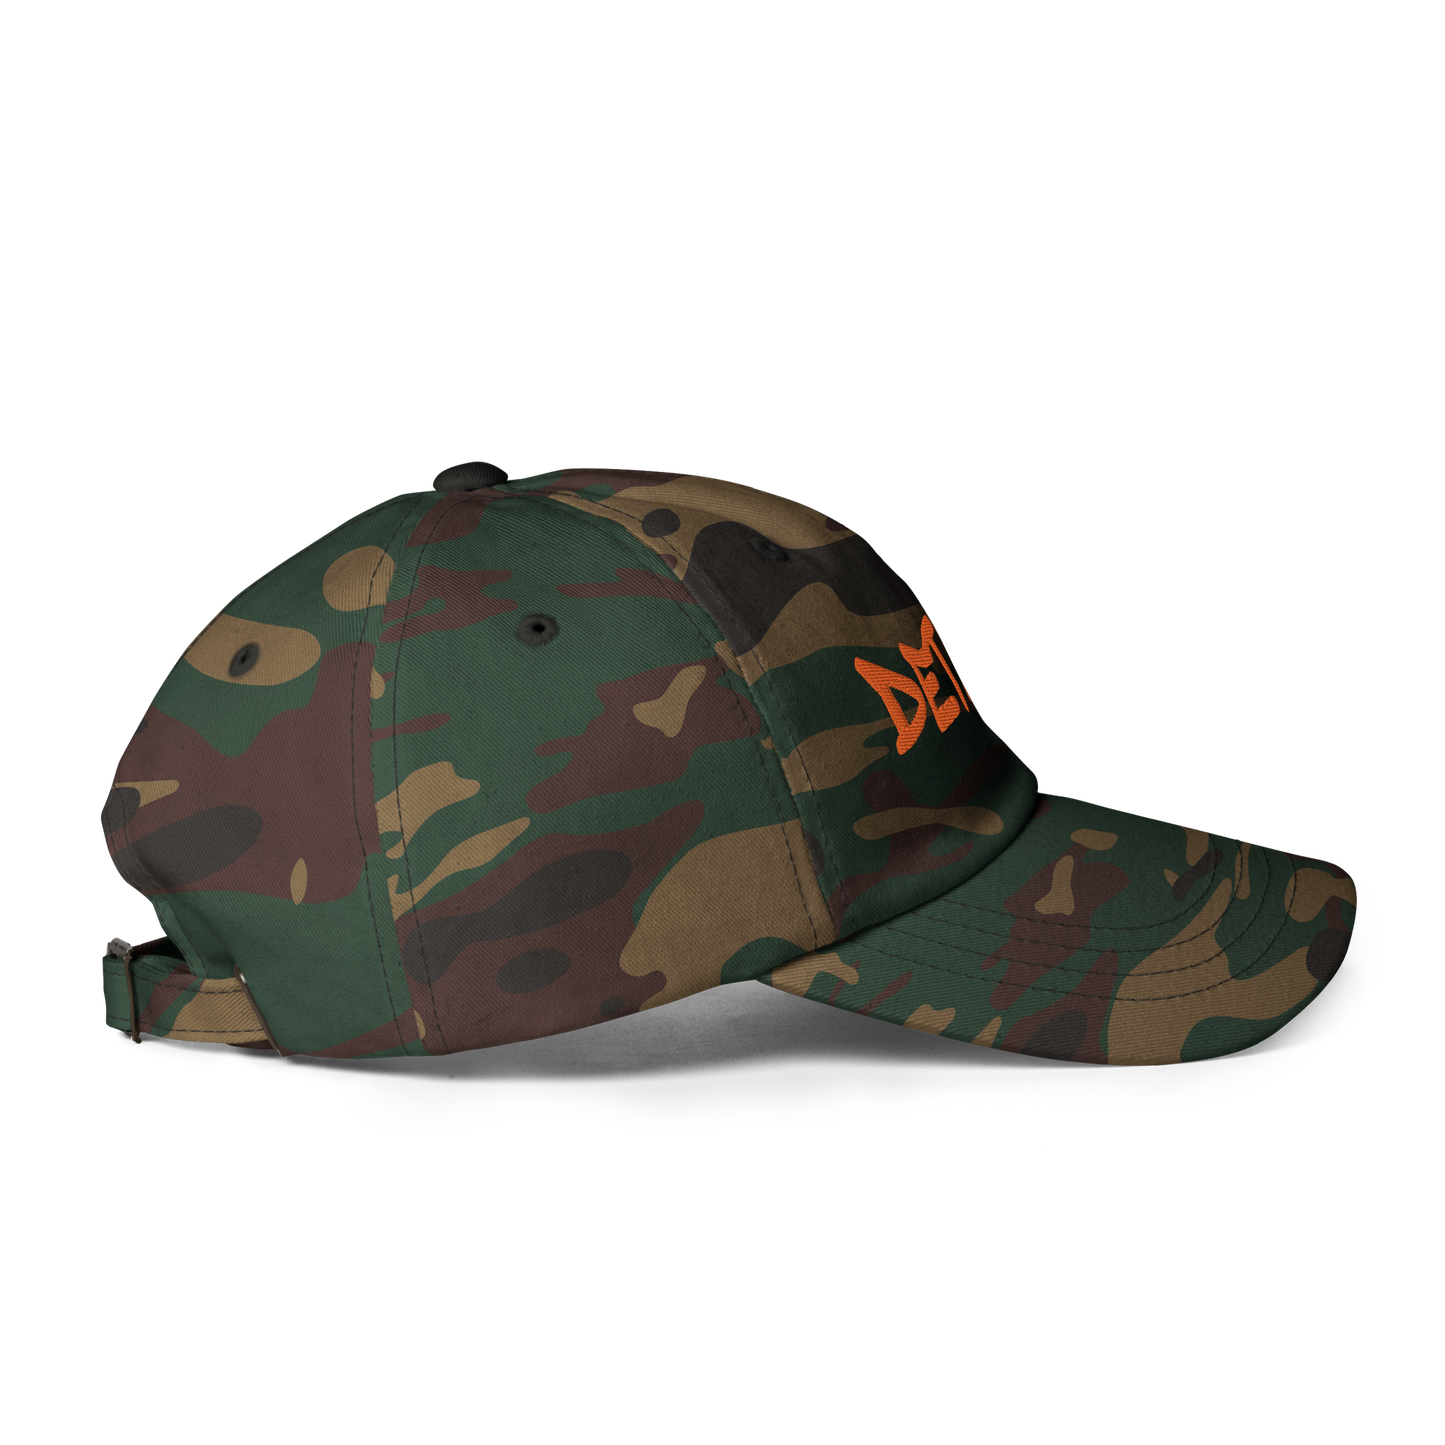 'Detroit' Camouflage Cap (Hip Hop Tag Font)